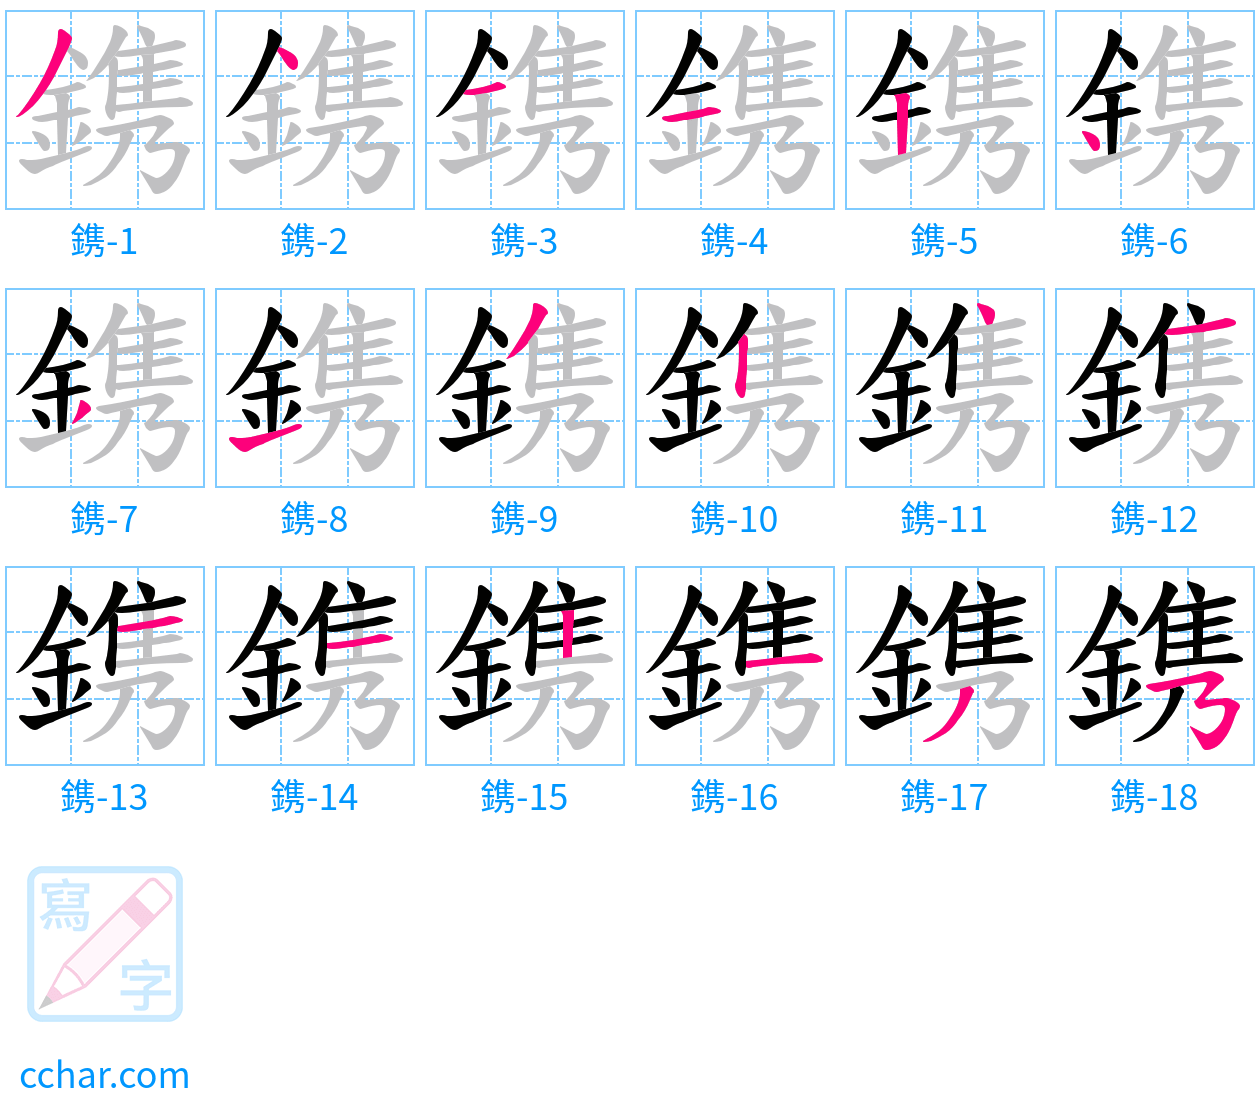 鎸 stroke order step-by-step diagram